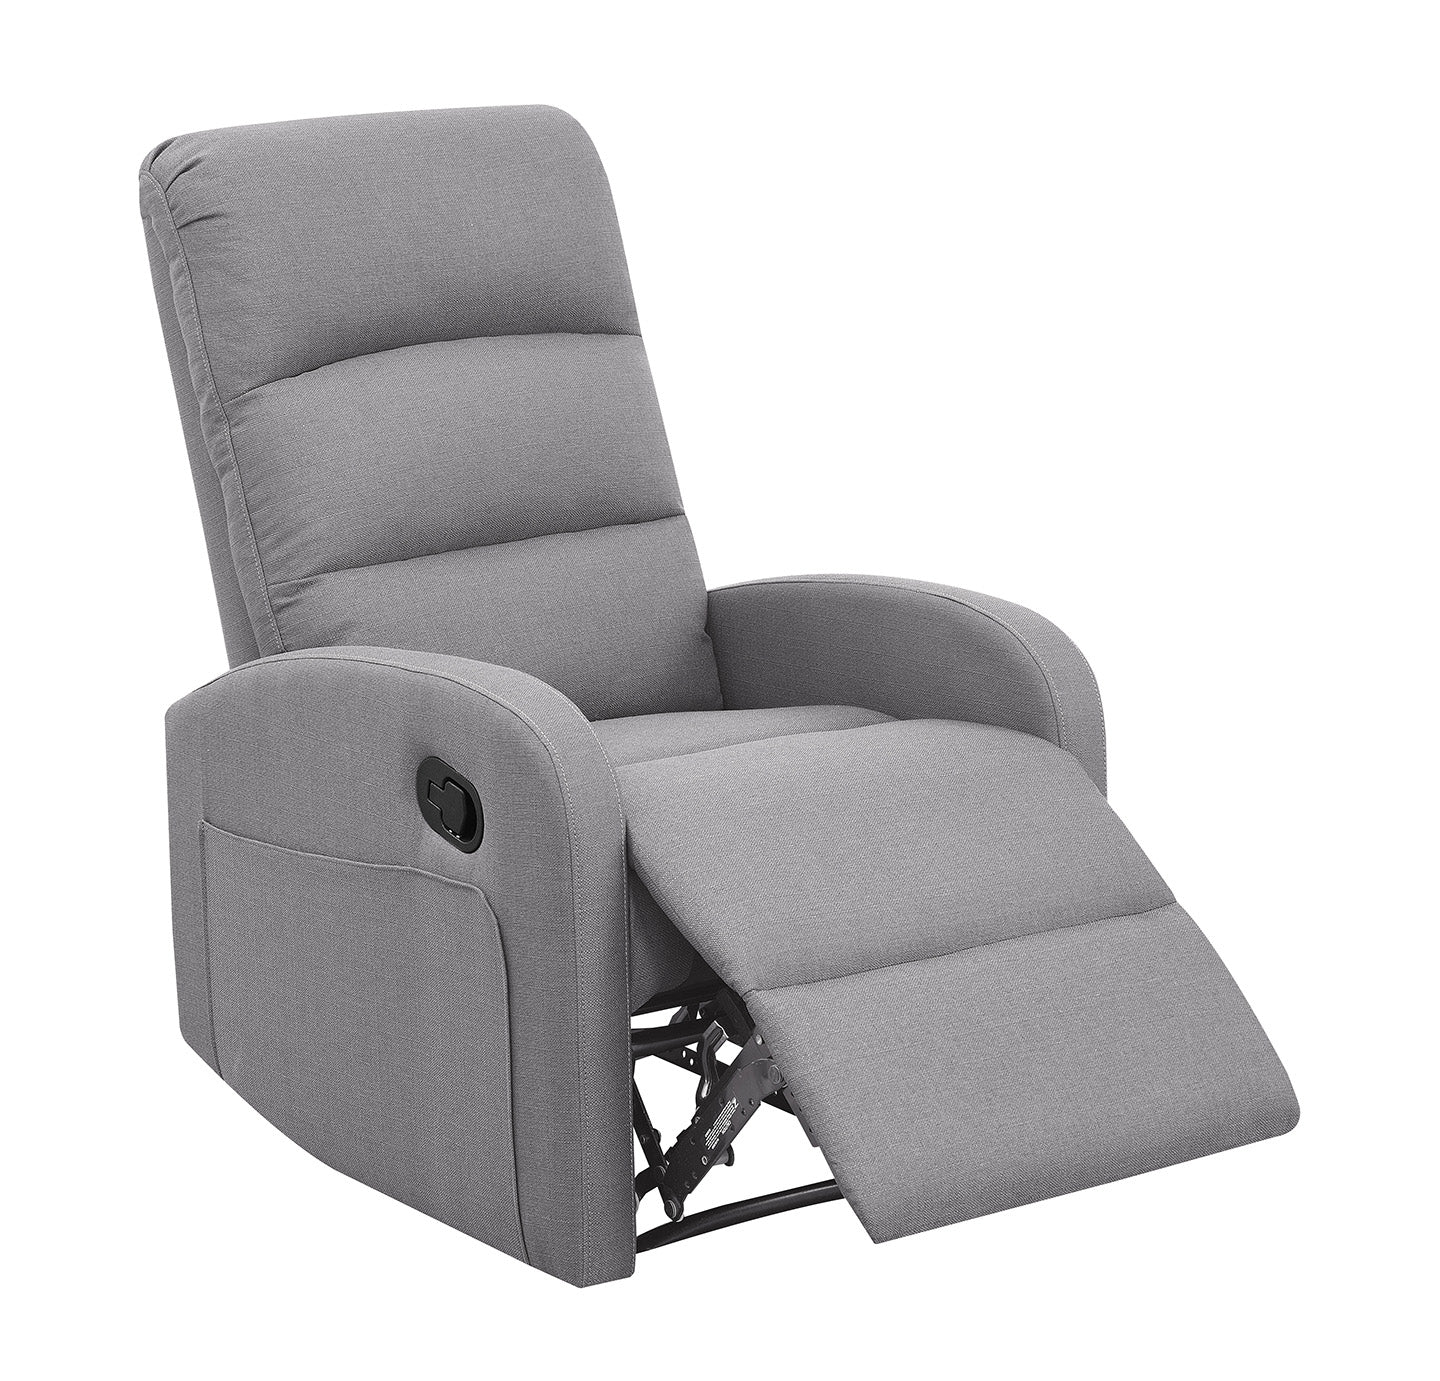 Relaxing Dawn Gray Recliner Chair